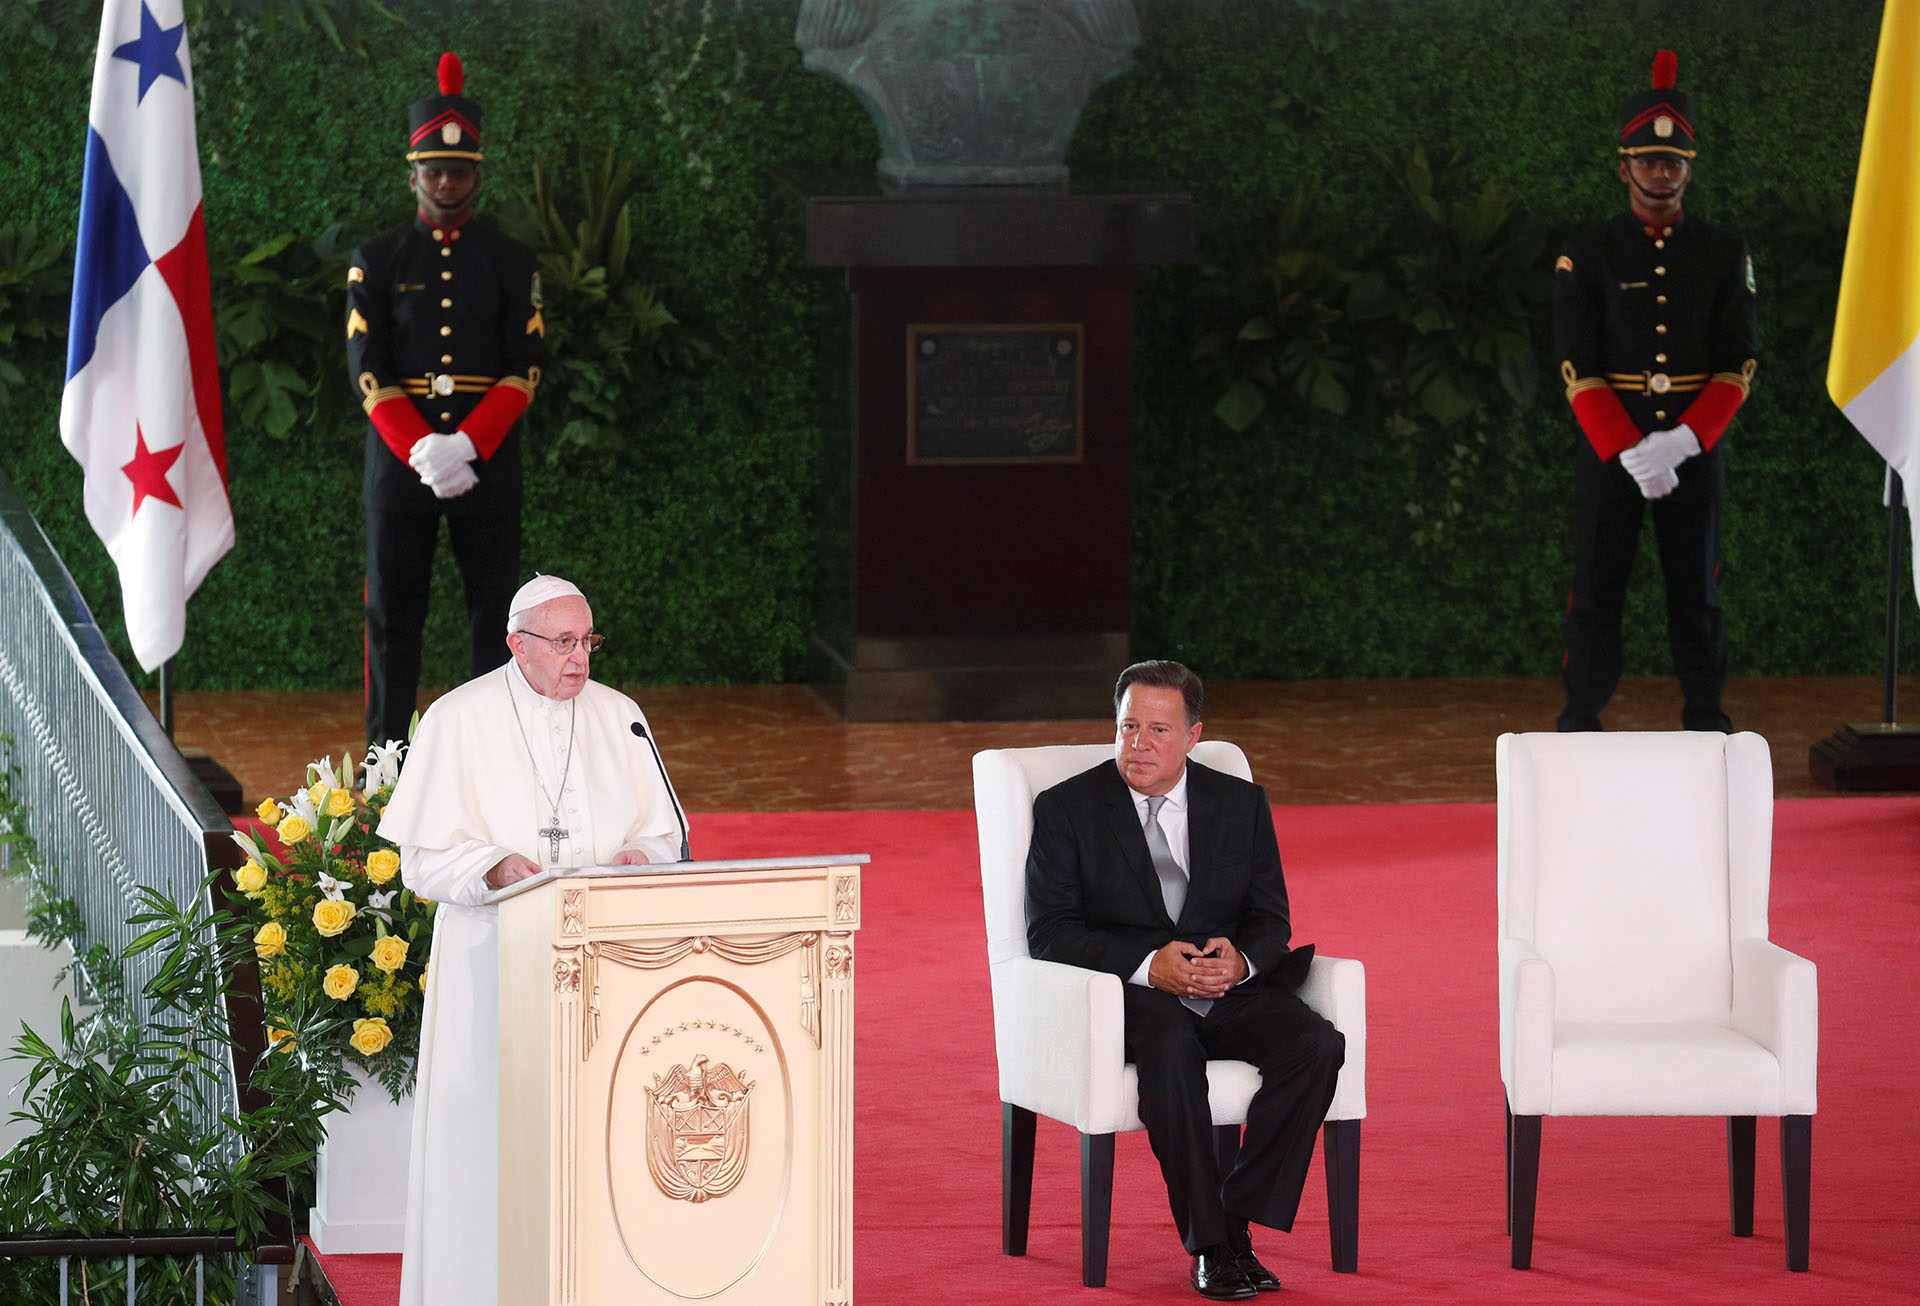 El papa Francisco pidió transparencia en su primer discurso en Panamá: "El servicio público es sinónimo de honestidad y justicia"